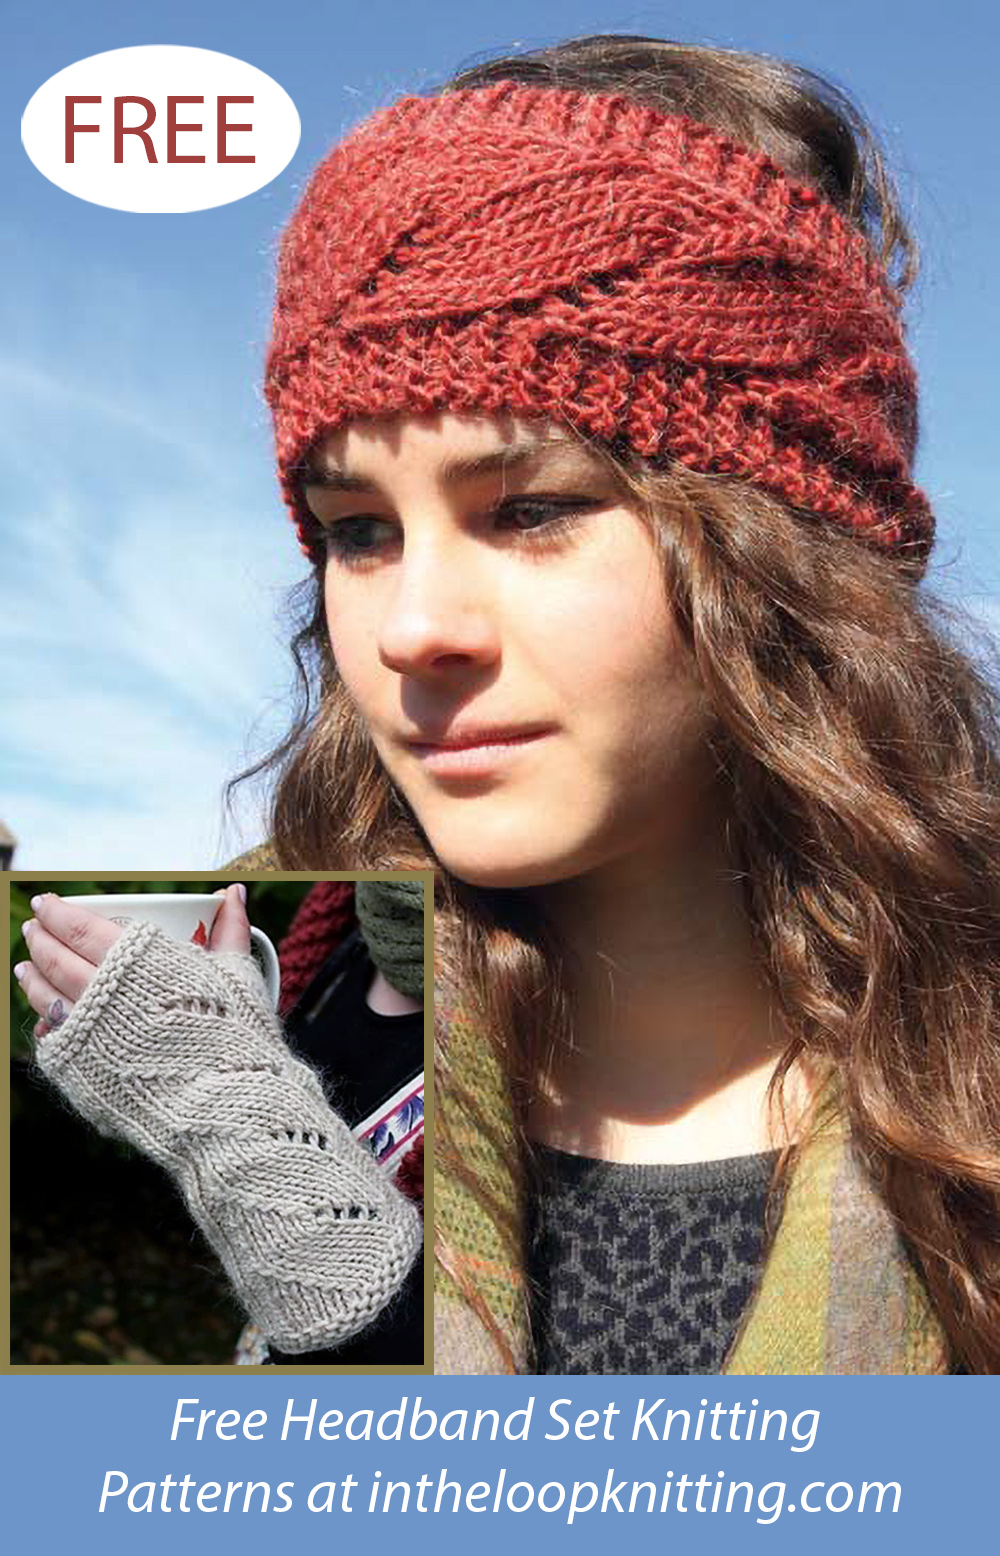 Free Charlotte Gloves and Headband Set Knitting Pattern